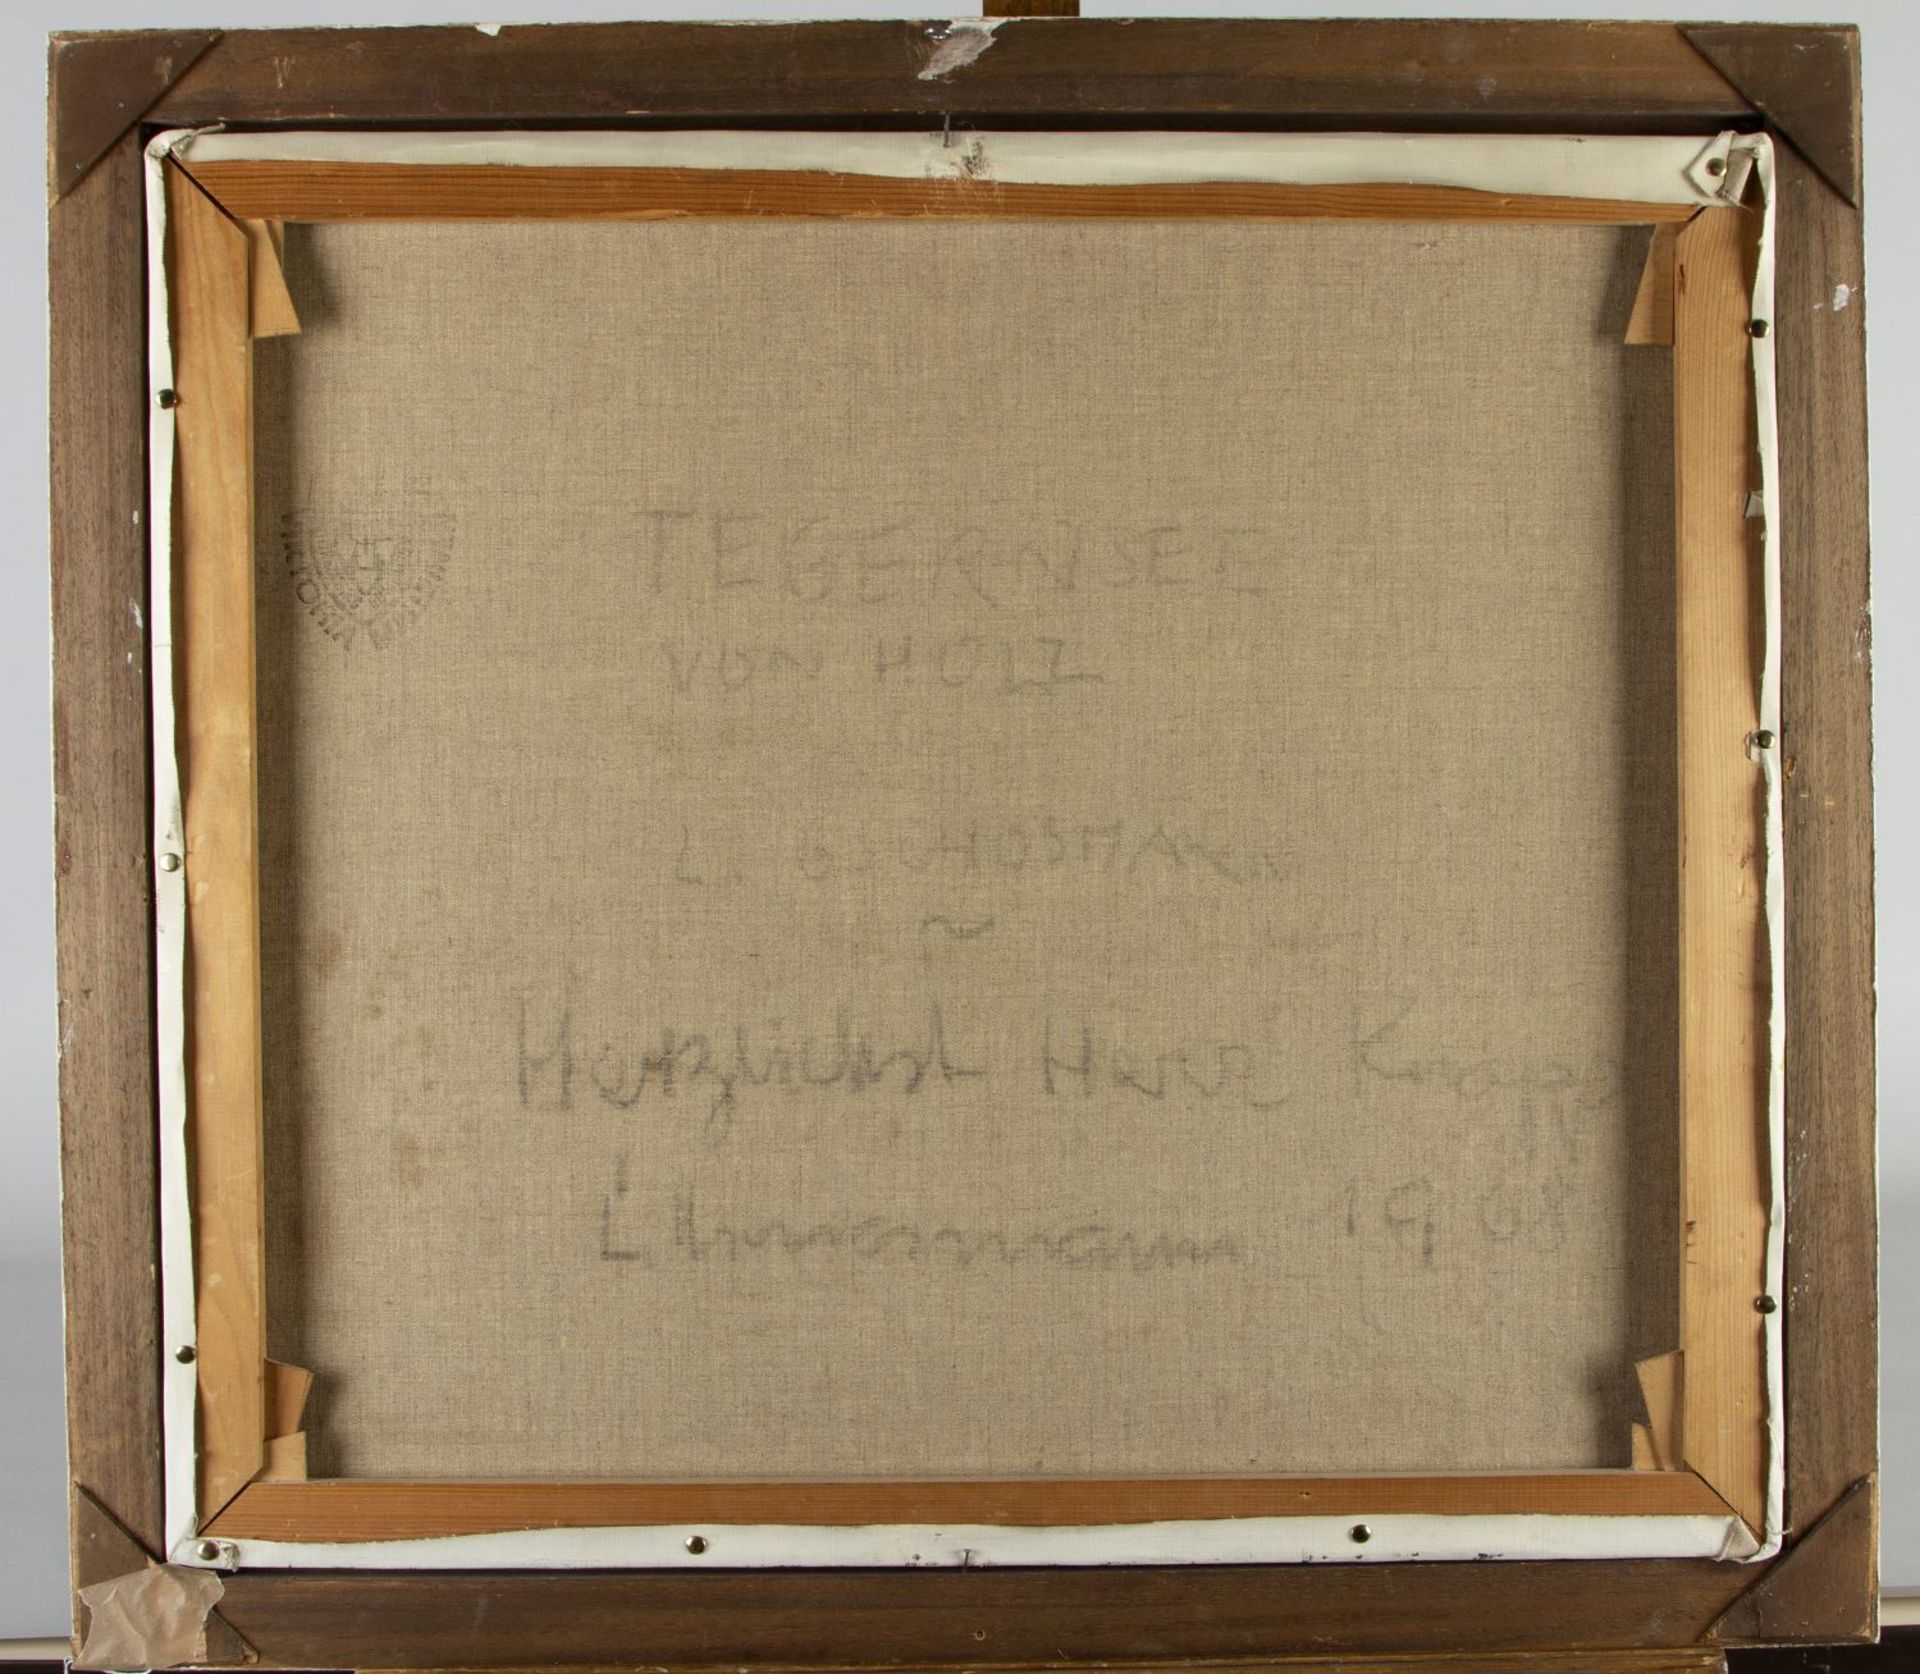 Gschossmann, Ludwig. 1913 München - Tegernsee 1988 Tegernsee von Holz. Öl/Lwd. Sign. 71 x 80,5 cm. G - Bild 3 aus 3